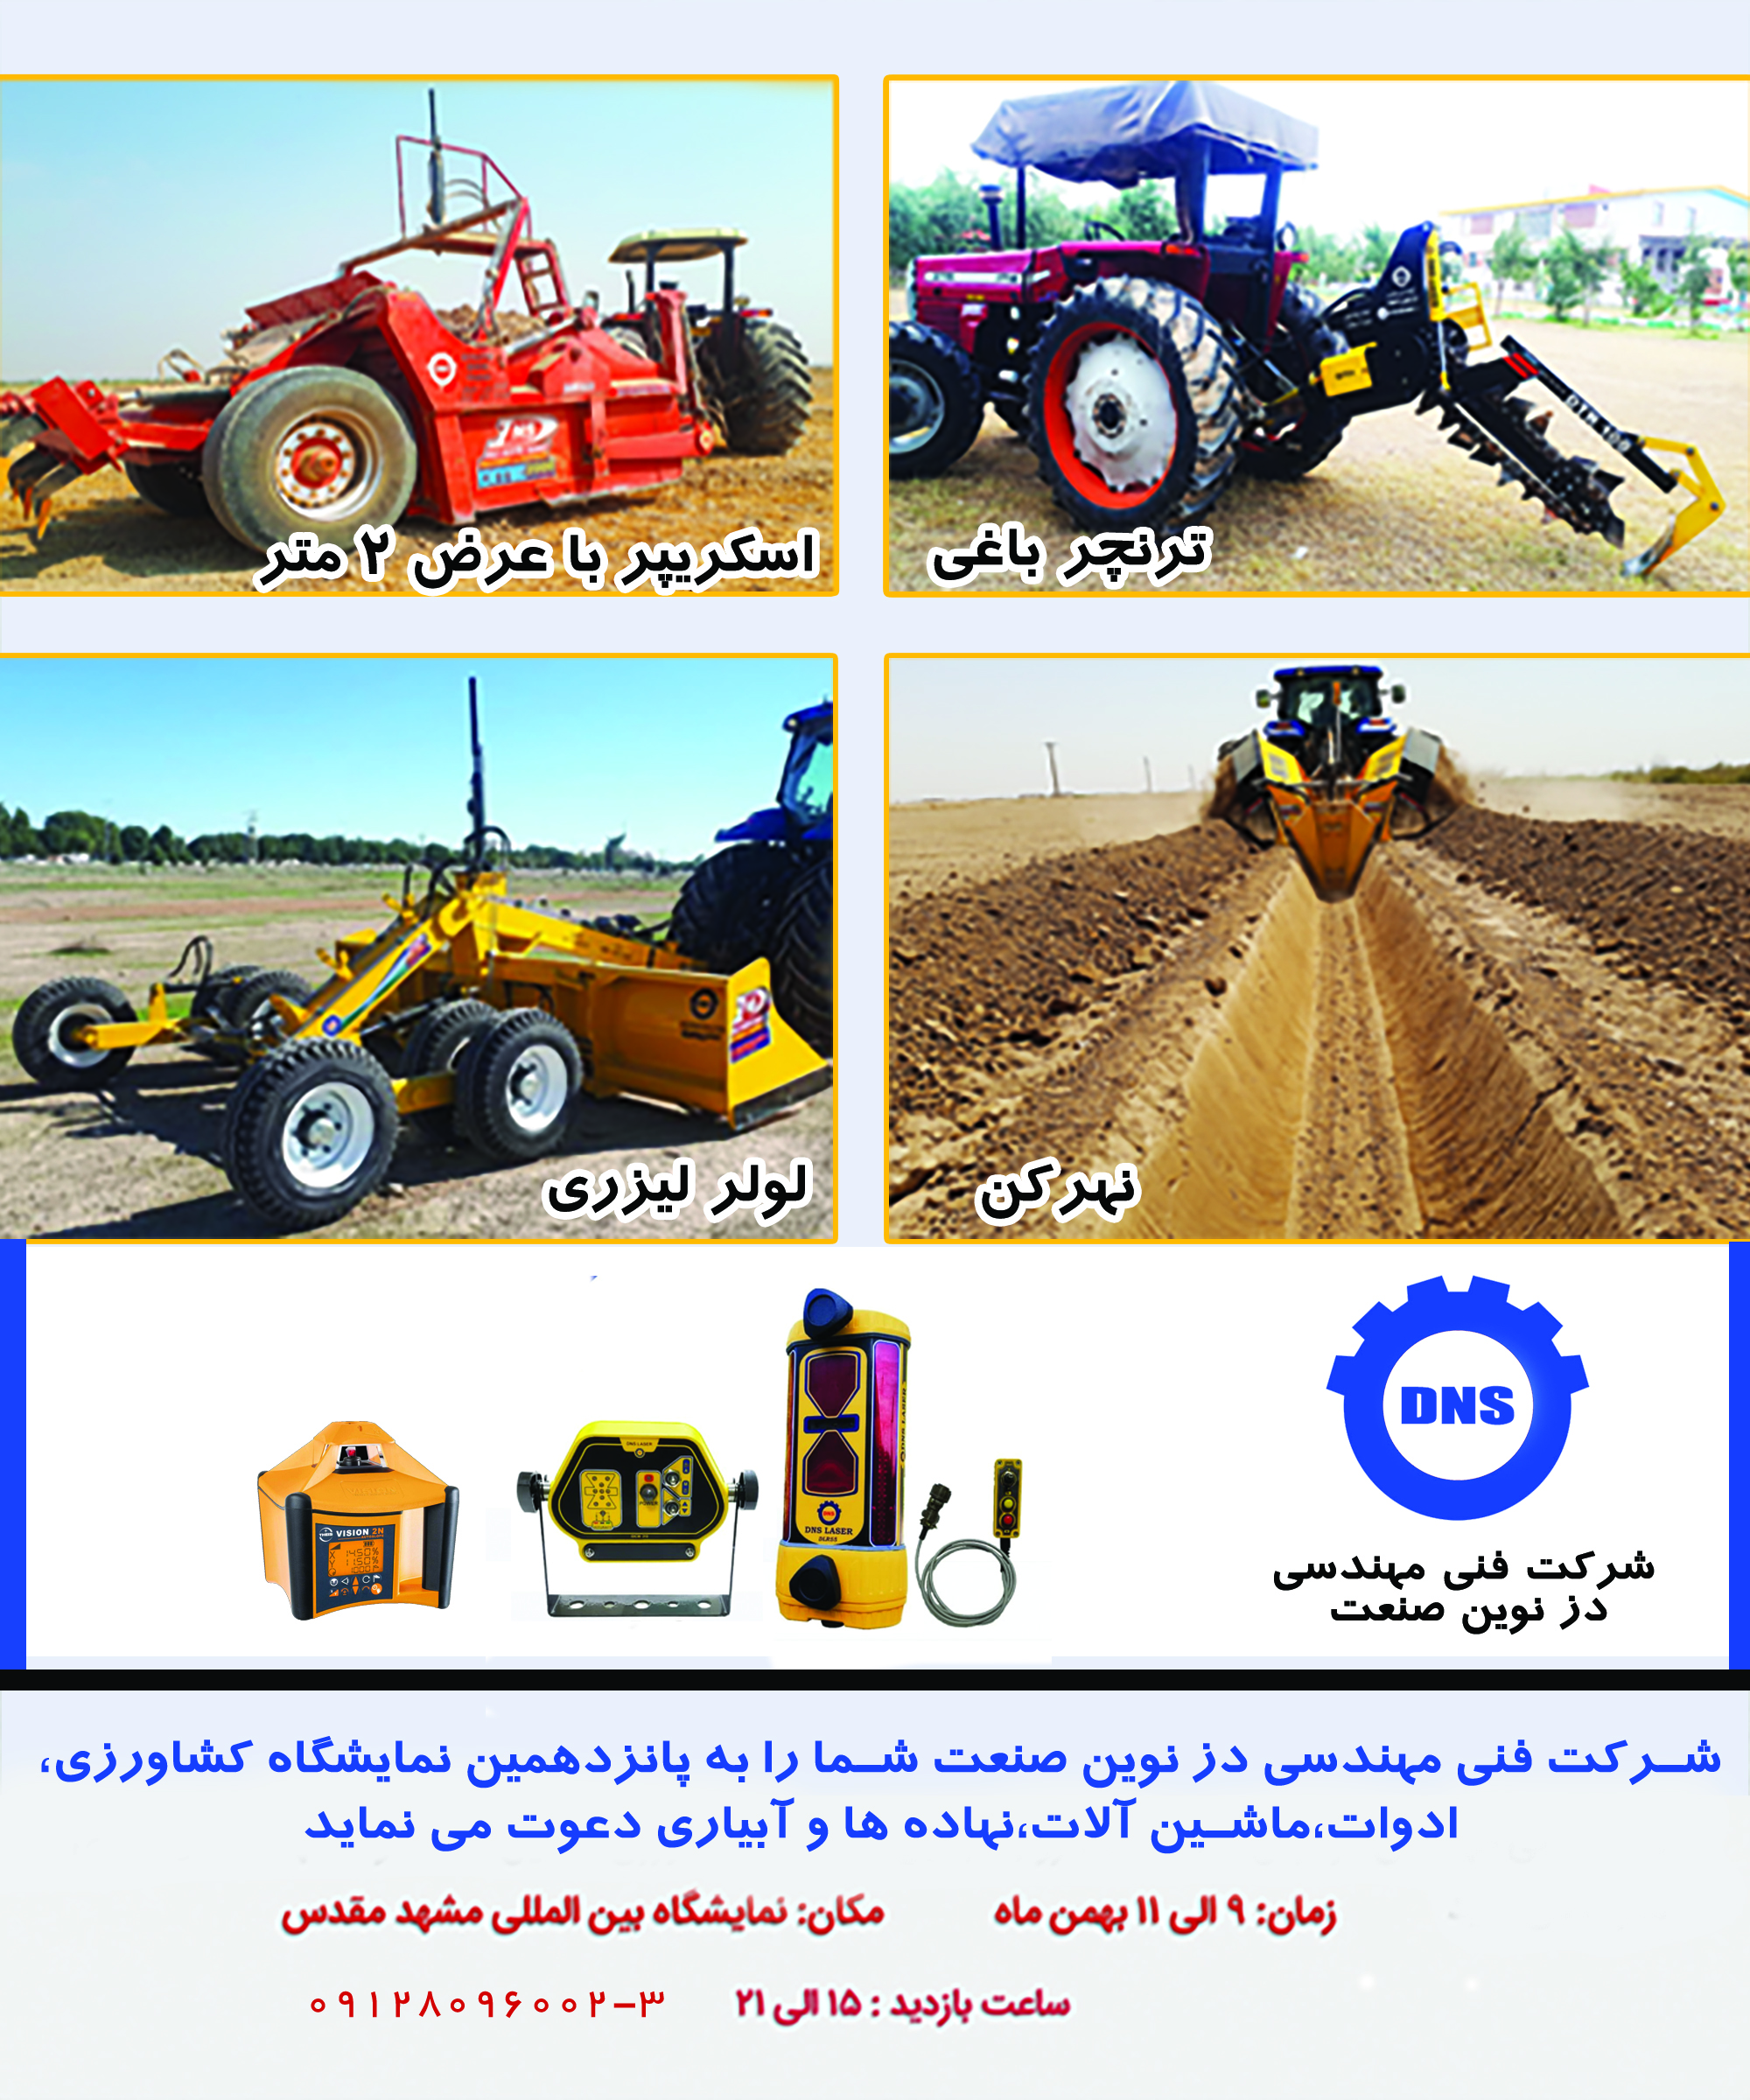 نمایشگاه کشاورزی،ادوات،ماشین آلات،نهاده ها و آبیاری مشهد مقدس بهمن 98 